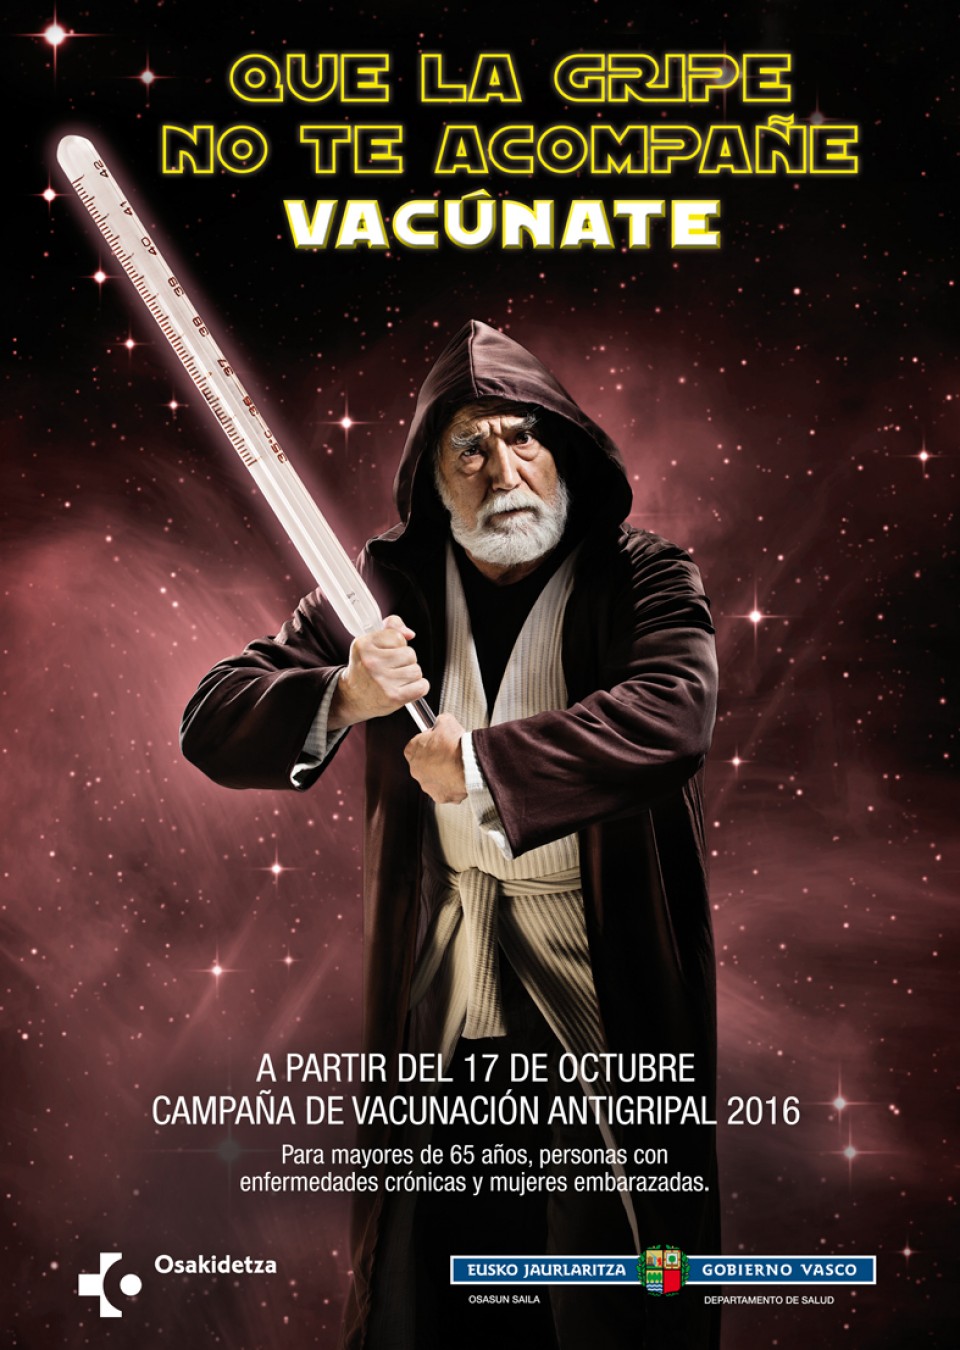 La campaña de vacunación antigripal comienza el 17 de octubre. Foto: www.irekia.eus